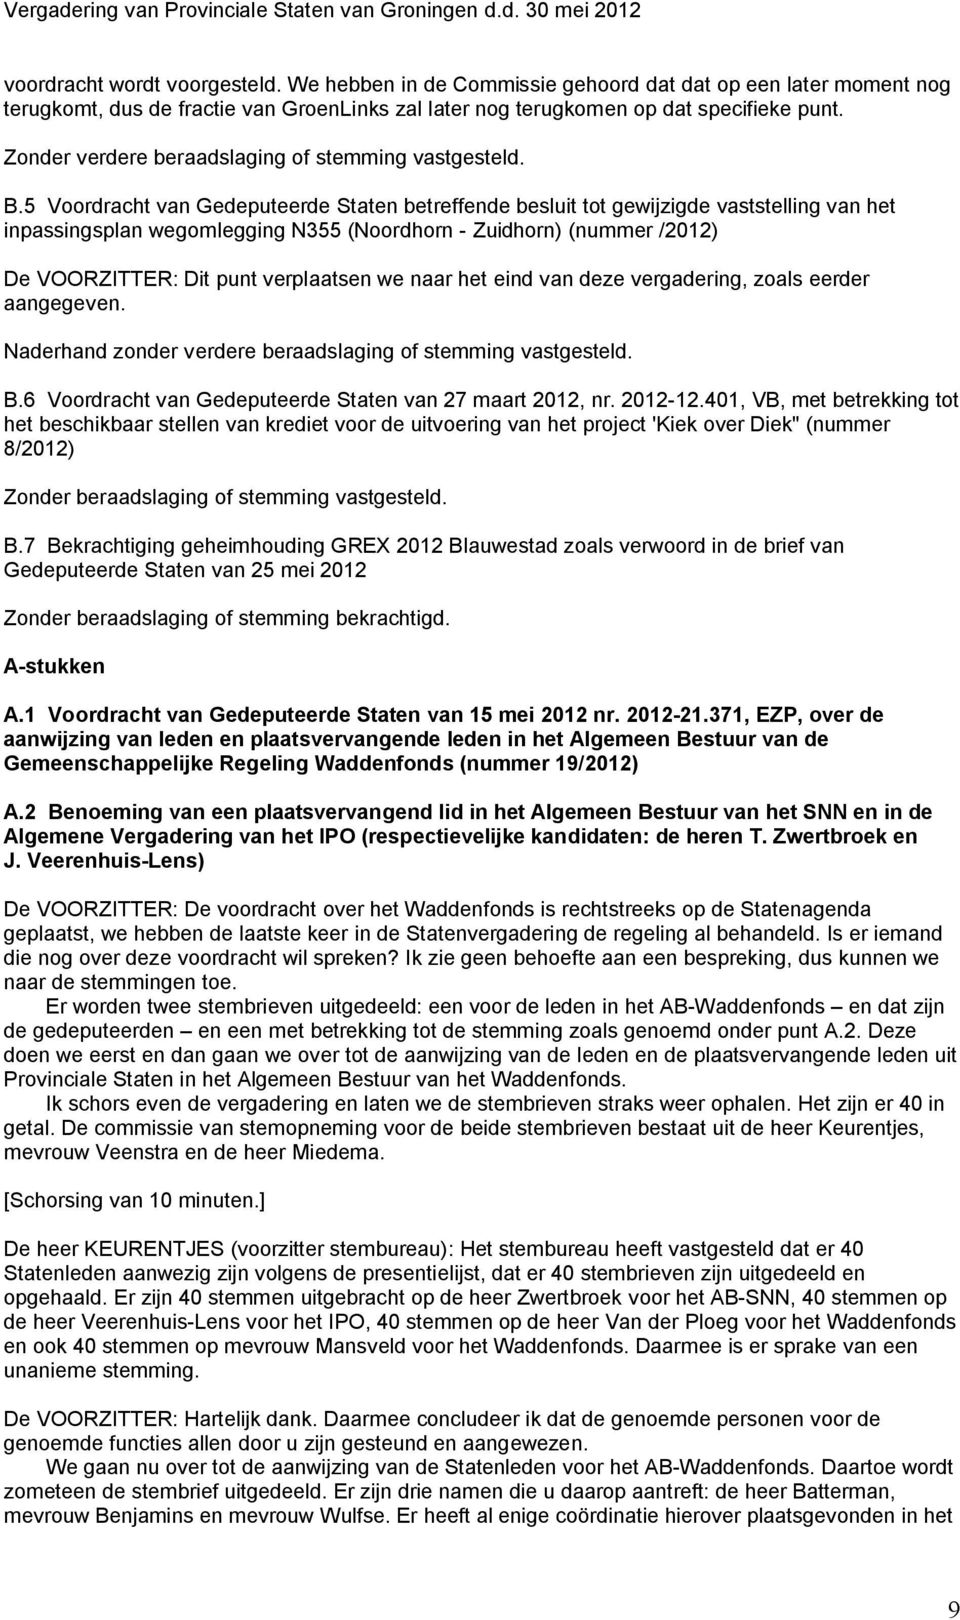 5 Voordracht van Gedeputeerde Staten betreffende besluit tot gewijzigde vaststelling van het inpassingsplan wegomlegging N355 (Noordhorn - Zuidhorn) (nummer /2012) De VOORZITTER: Dit punt verplaatsen